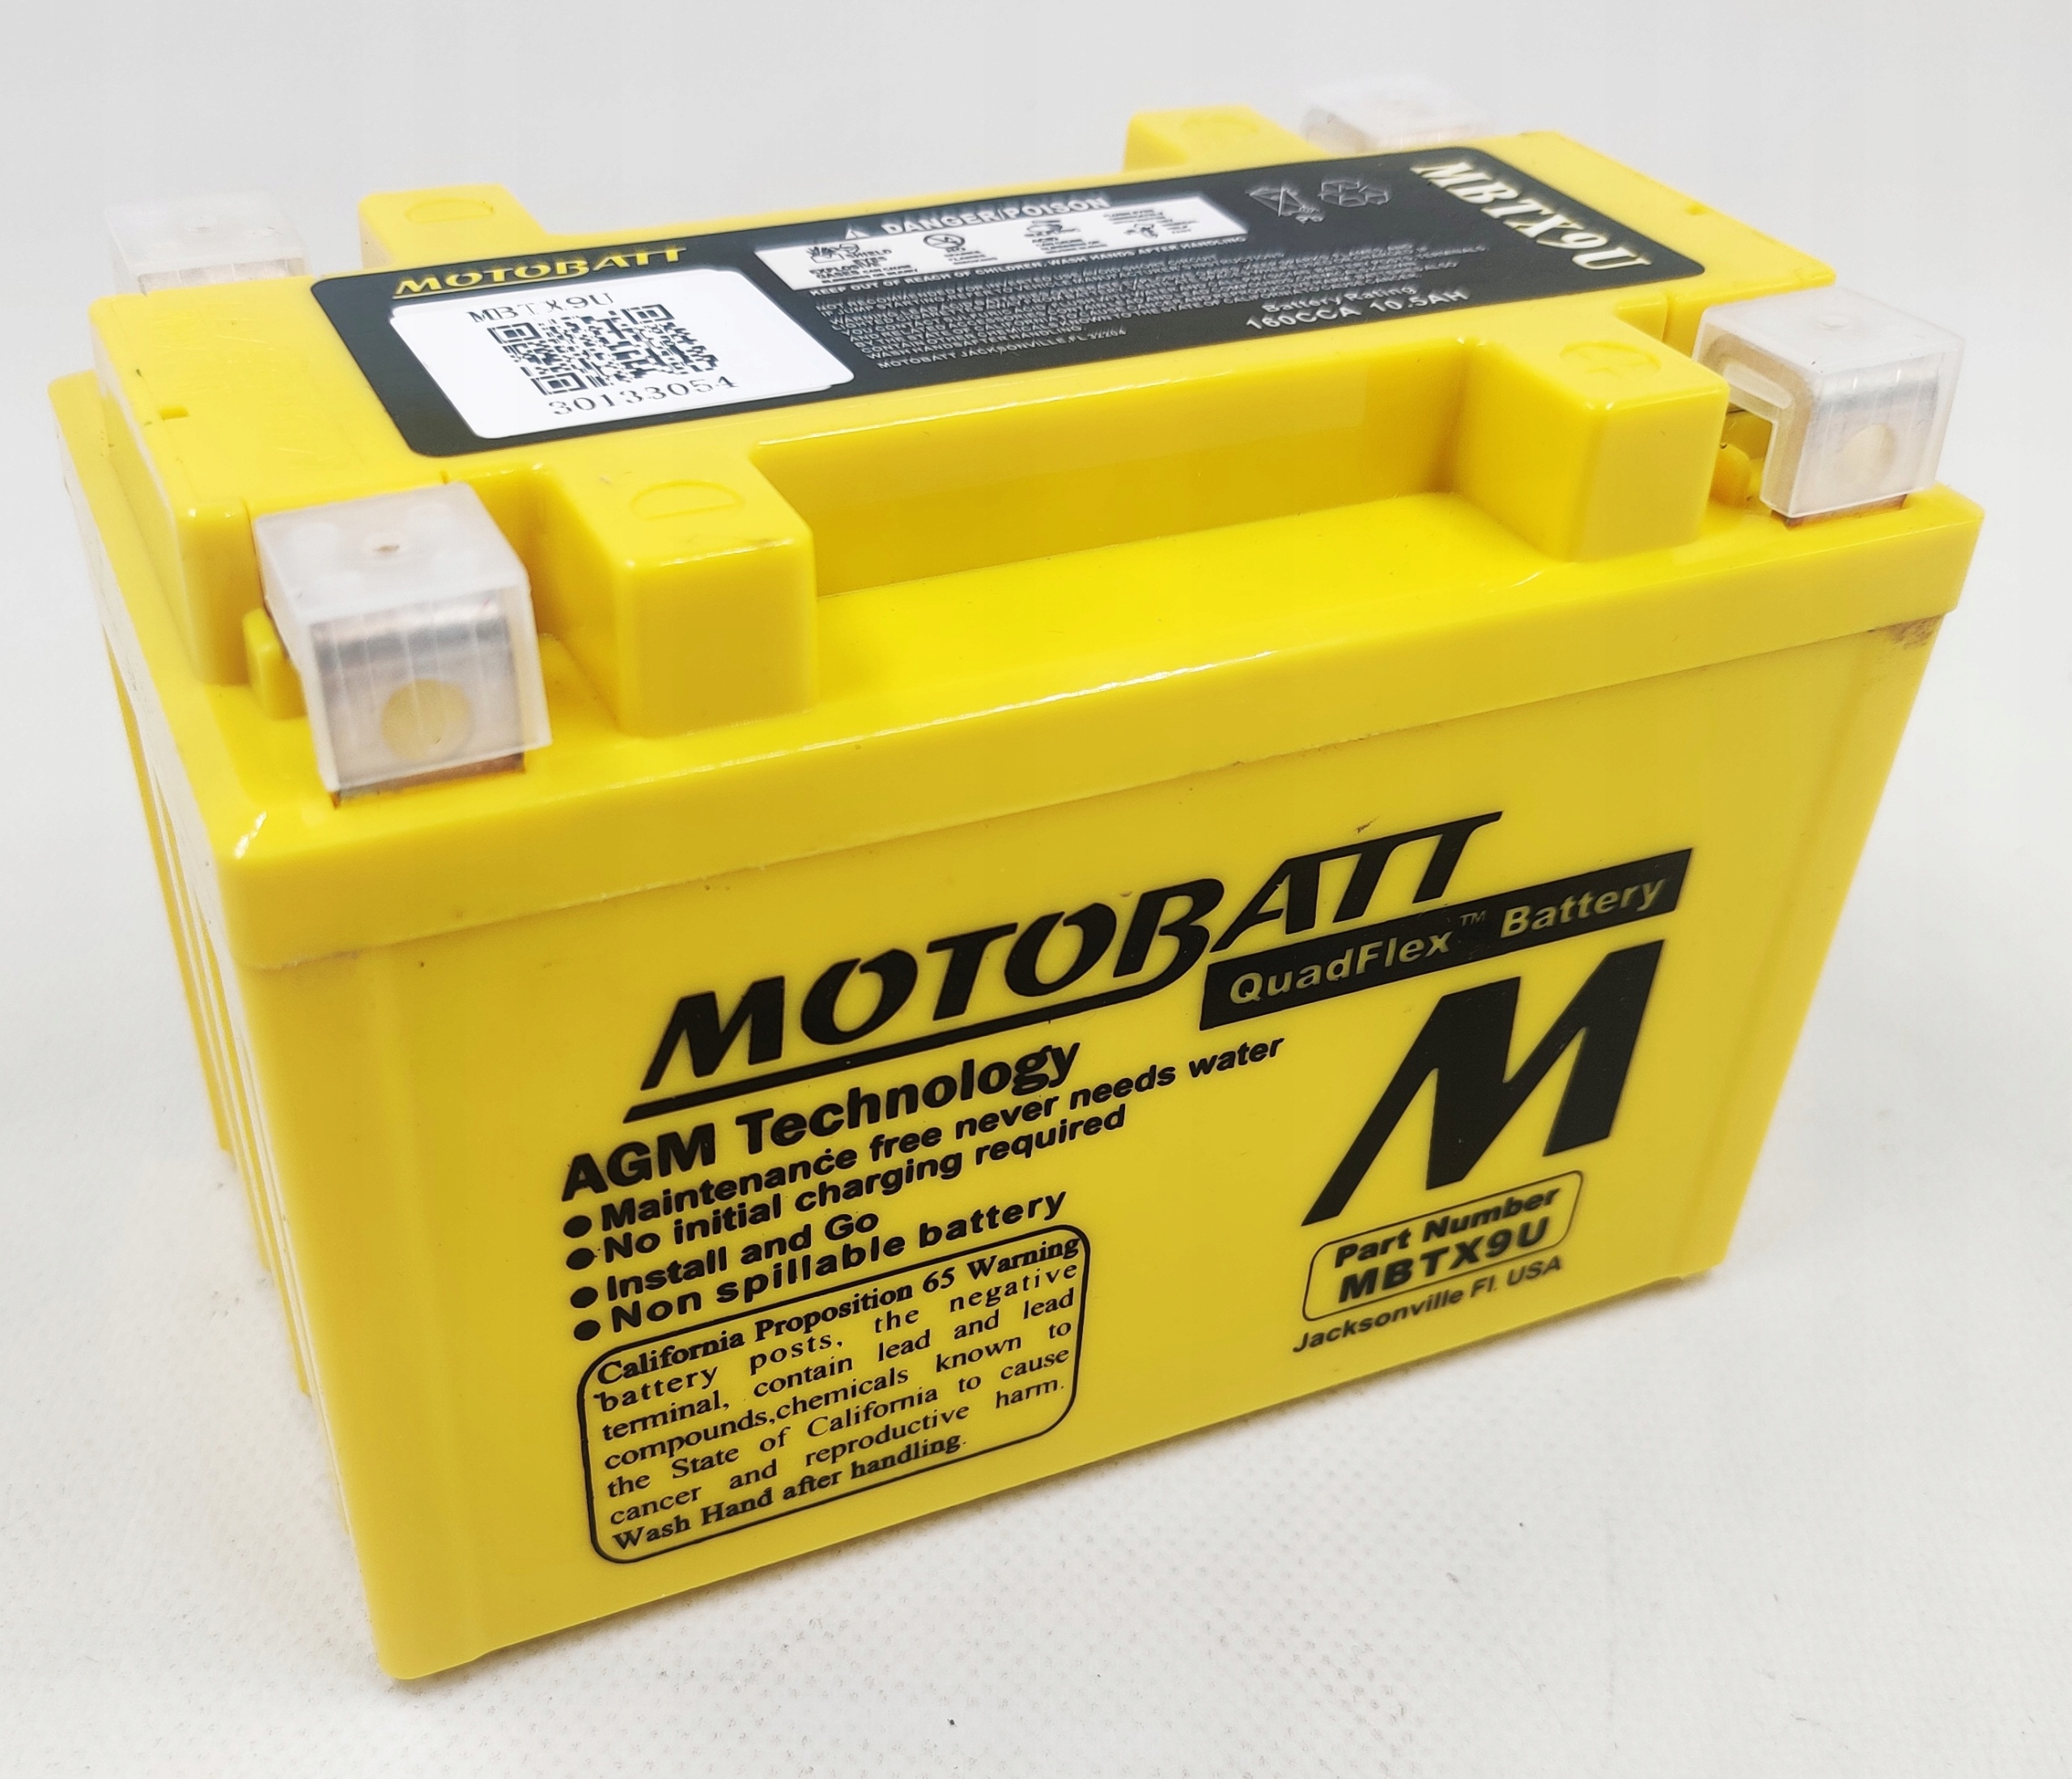 Akumulator Motobatt MBTX9U 12V 10.5AH 160A